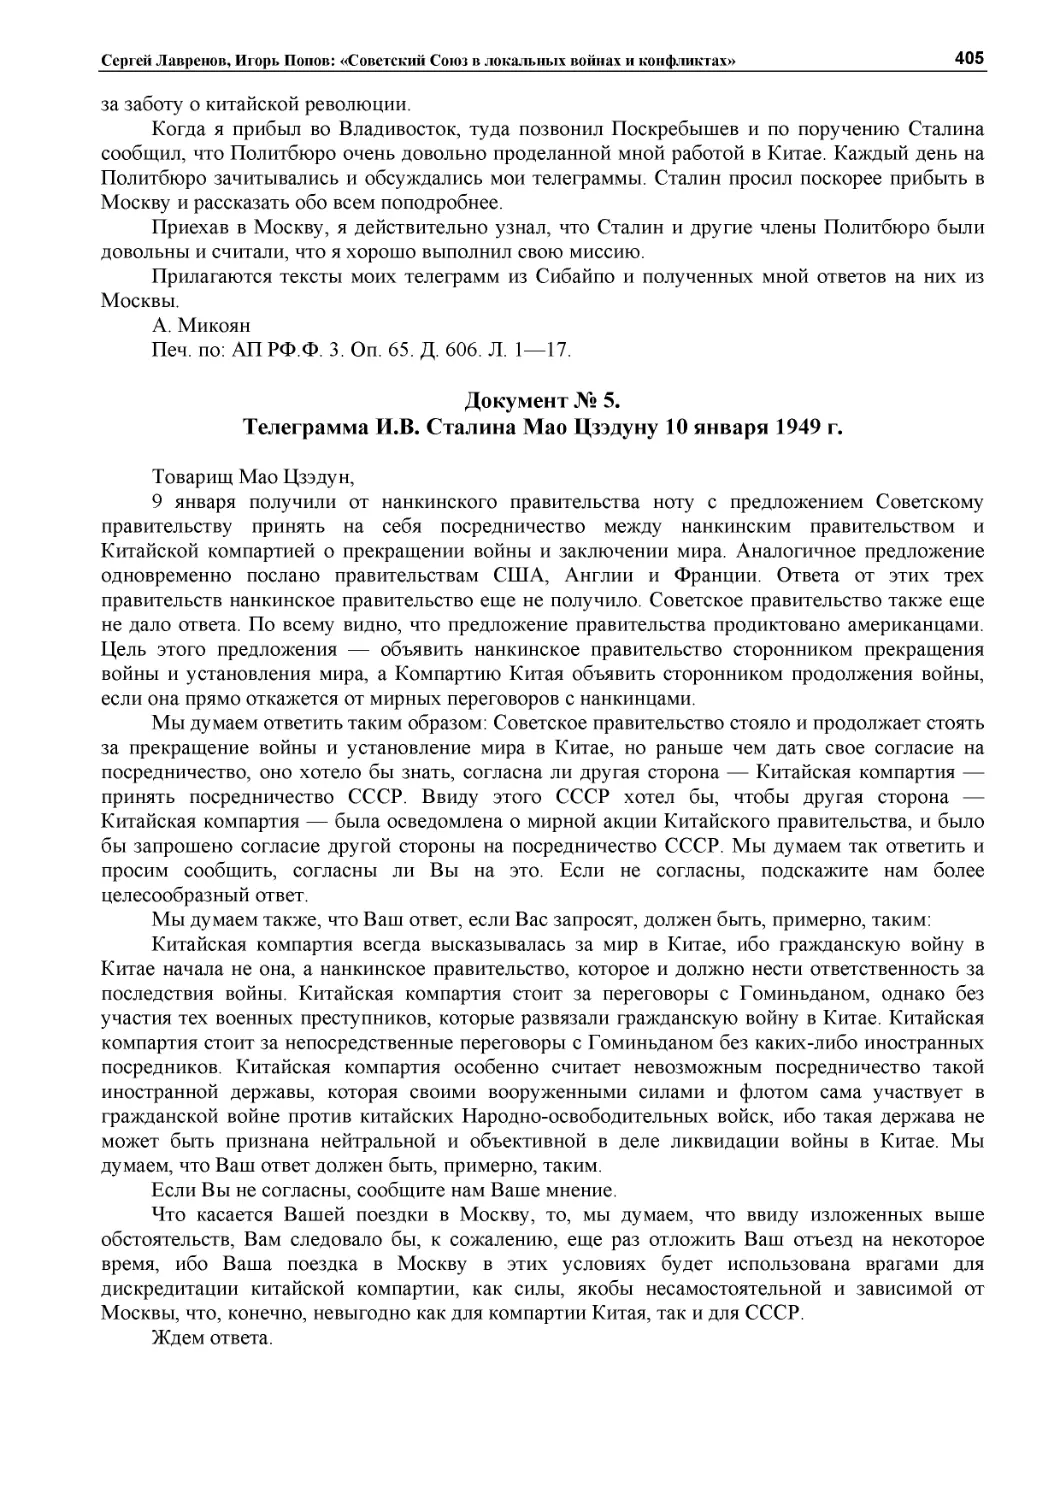 ﻿Документ № 5.
﻿Телеграмма И.В. Сталина Мао Цзэдуну 10 января 1949 г.